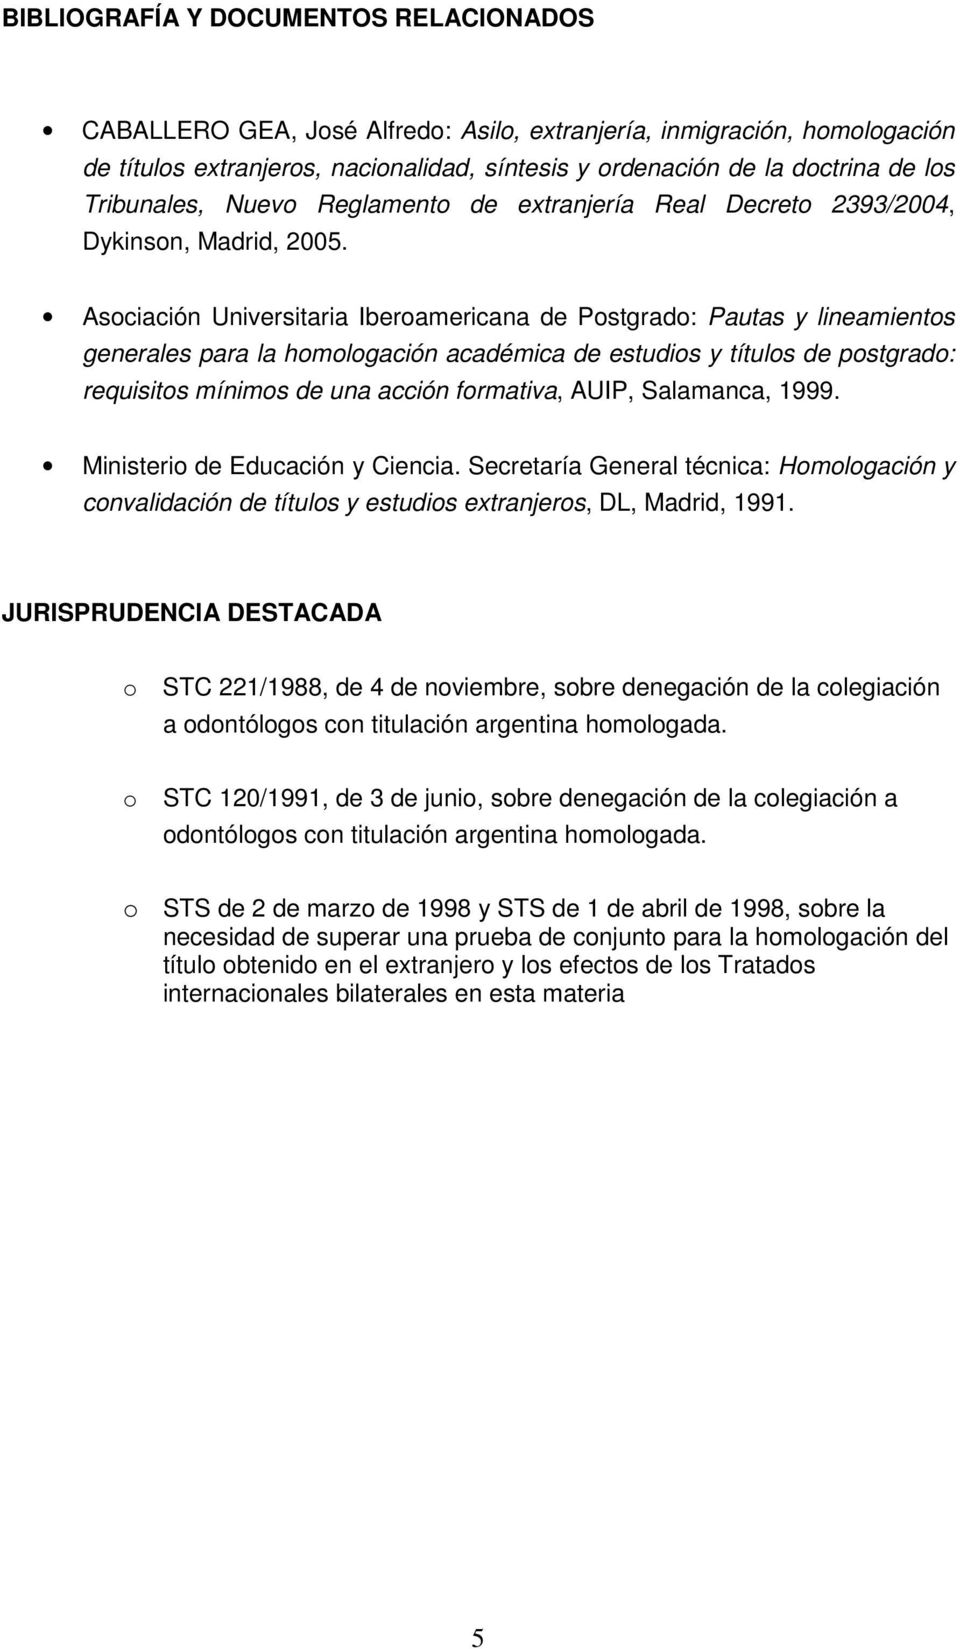 Asociación Universitaria Iberoamericana de Postgrado: Pautas y lineamientos generales para la homologación académica de estudios y títulos de postgrado: requisitos mínimos de una acción formativa,